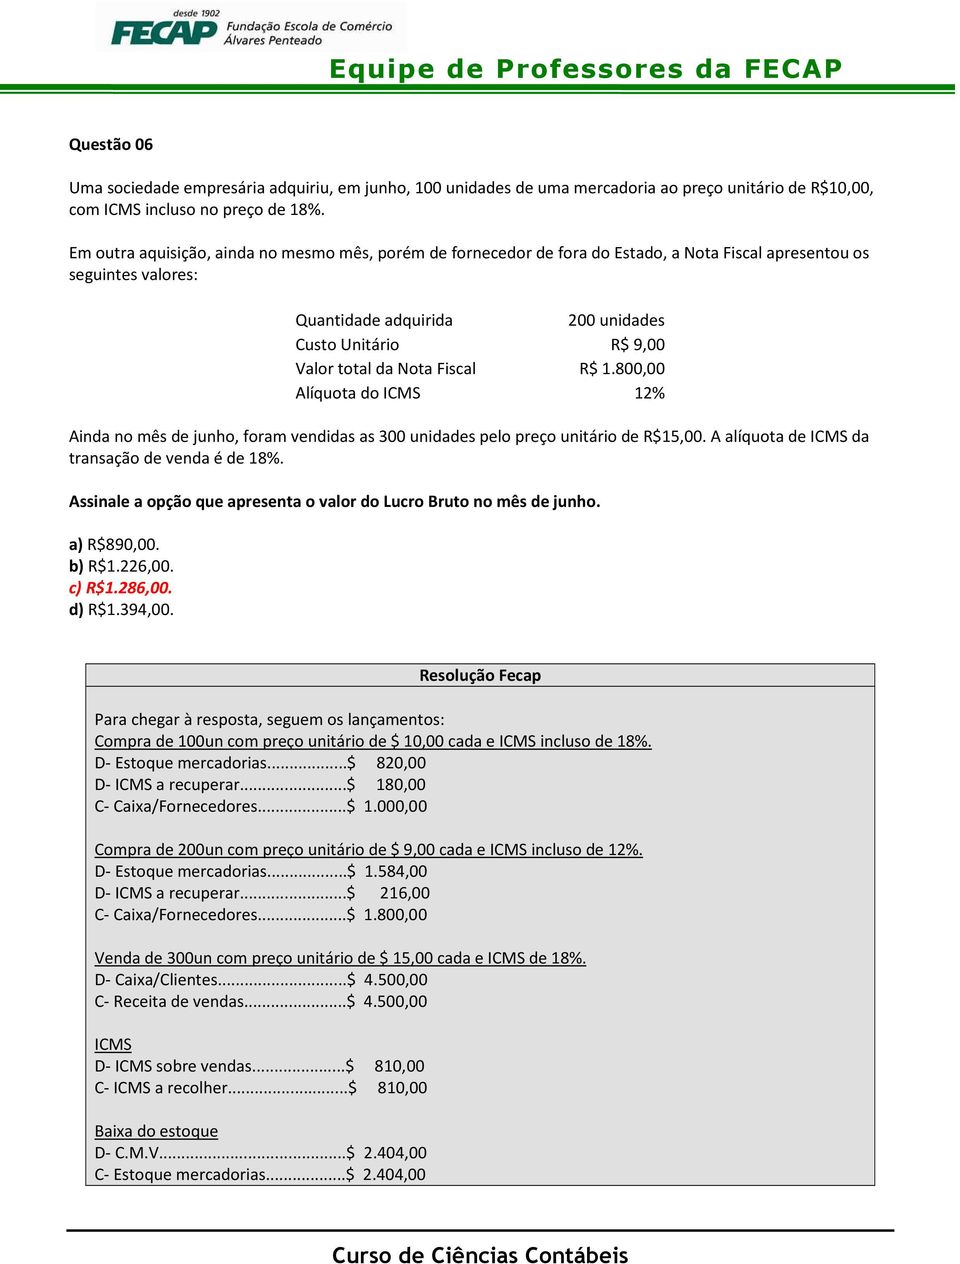 Nota Fiscal R$ 1.800,00 Alíquota do ICMS 12% Ainda no mês de junho, foram vendidas as 300 unidades pelo preço unitário de R$15,00. A alíquota de ICMS da transação de venda é de 18%.